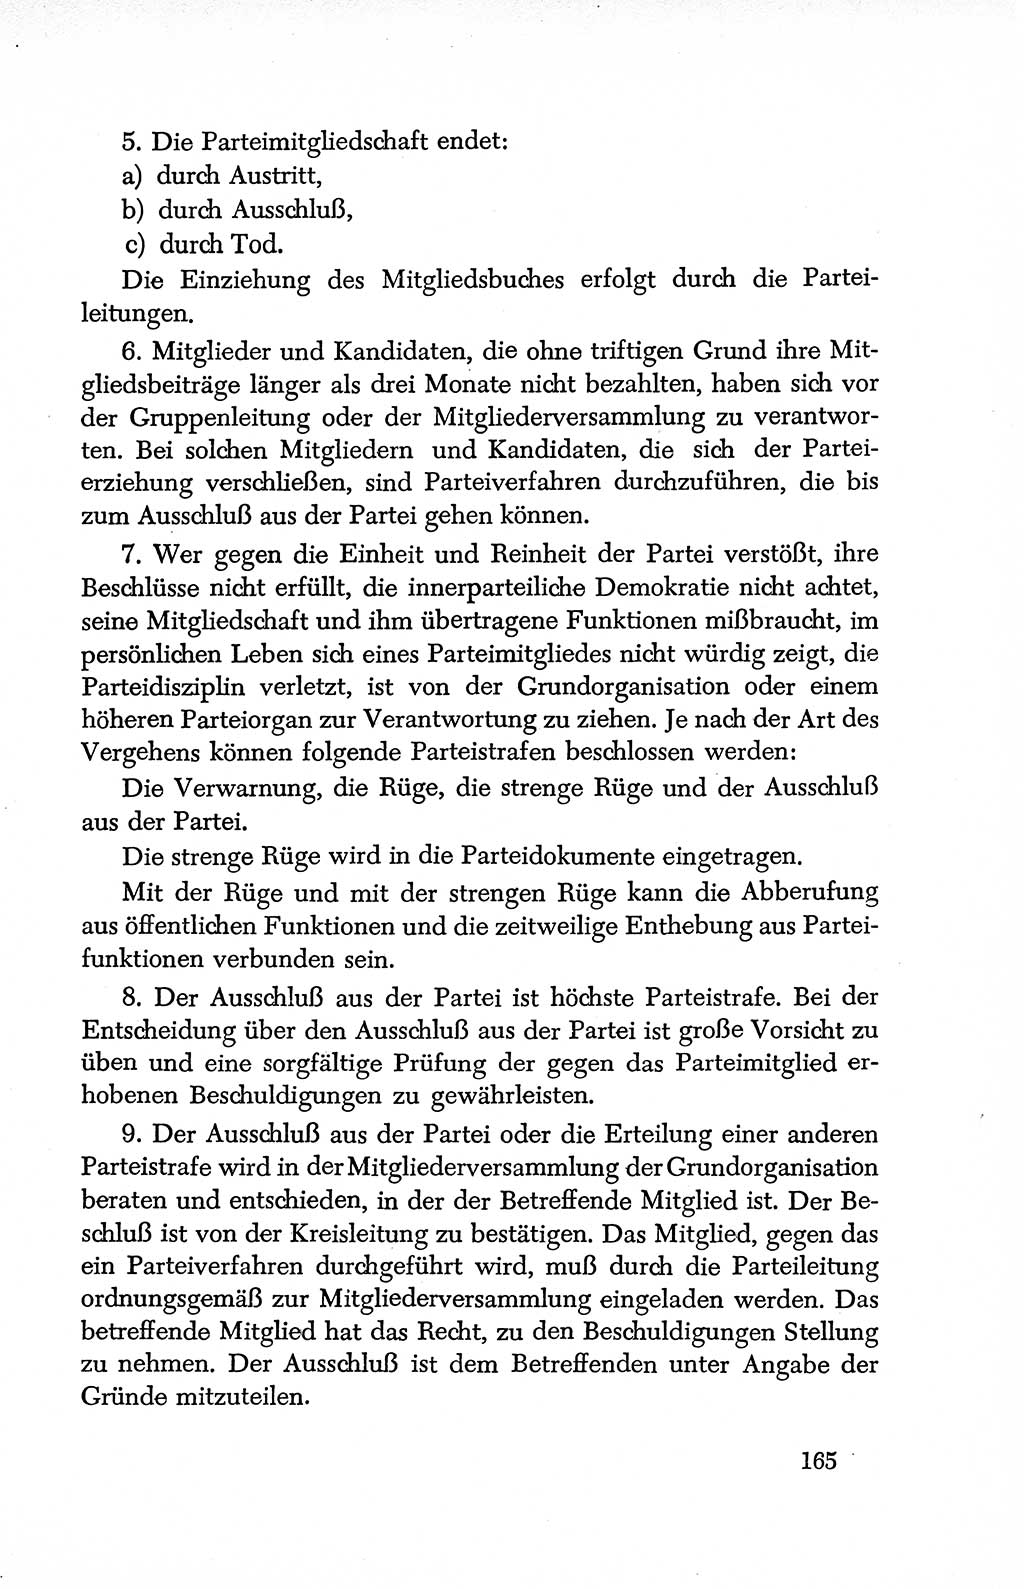 Dokumente der Sozialistischen Einheitspartei Deutschlands (SED) [Deutsche Demokratische Republik (DDR)] 1950-1952, Seite 165 (Dok. SED DDR 1950-1952, S. 165)